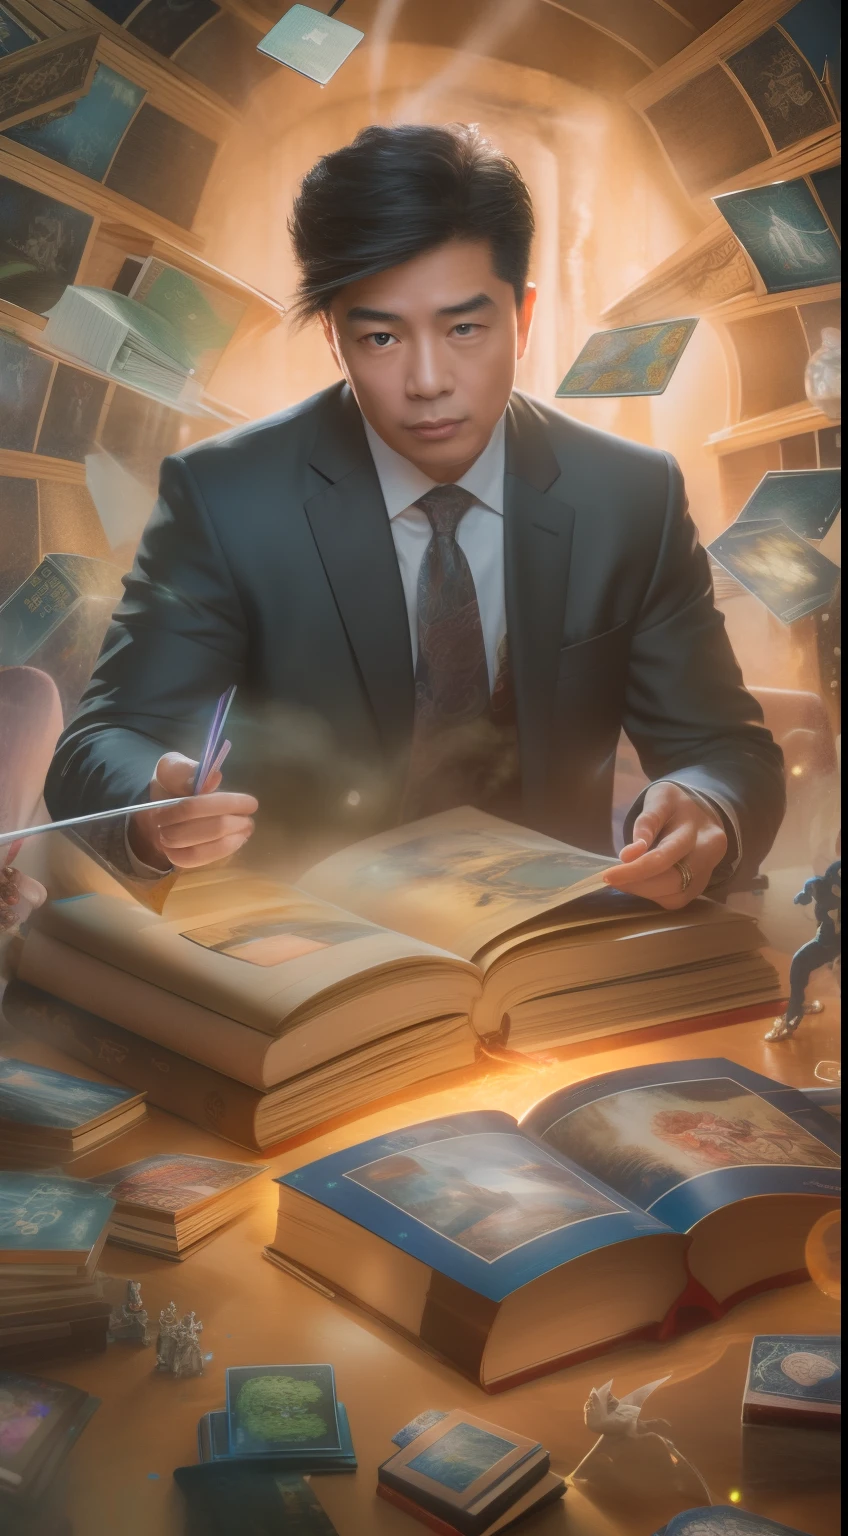 Una pintura detallada que representa a un guapo., Hombre asiático maduro con traje rodeado por una ráfaga de cartas mágicas brillantes y el libro Dragones y Mazmorras en el centro.